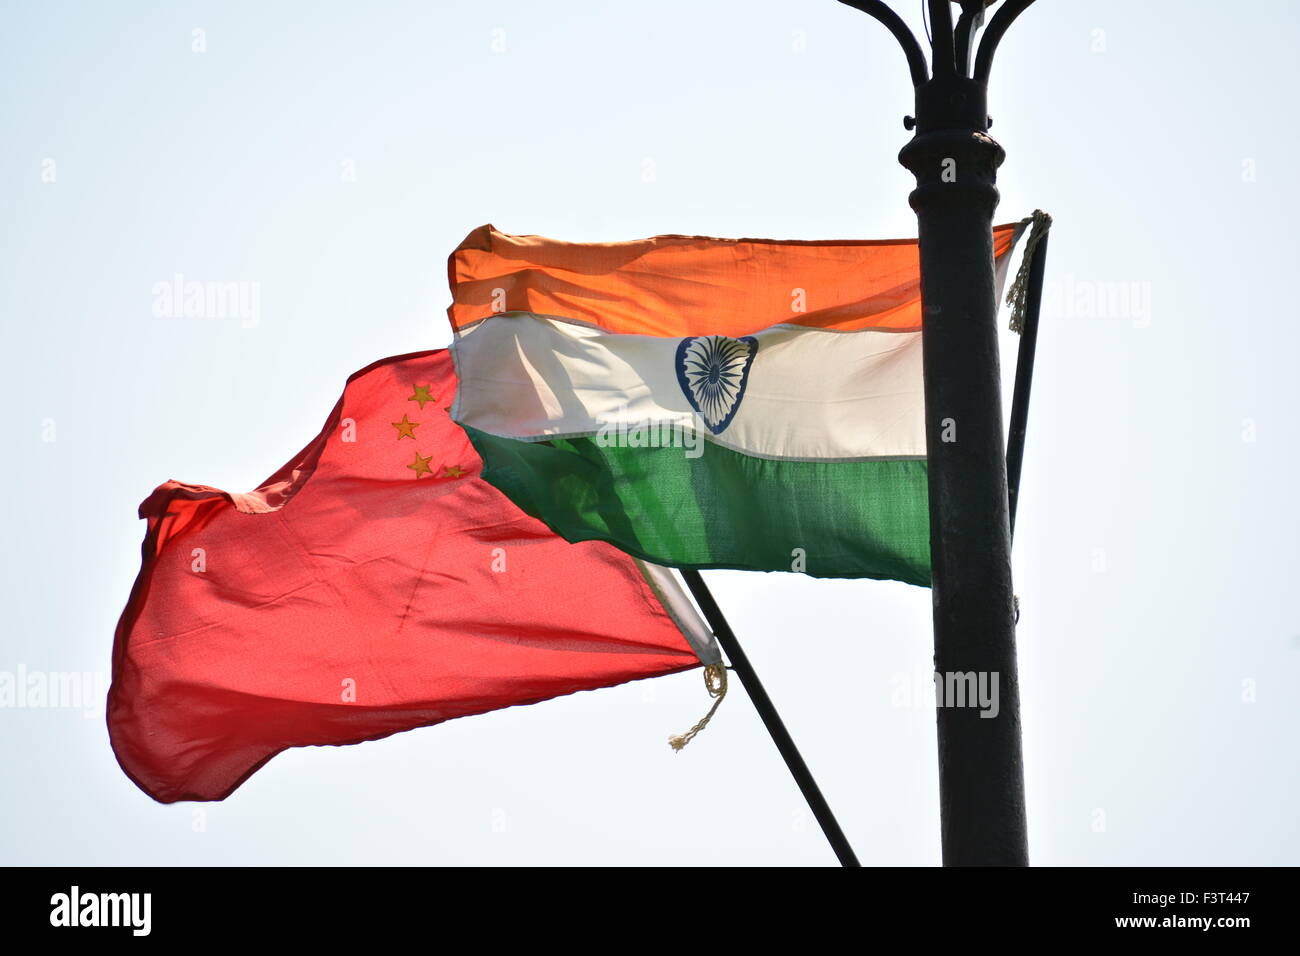 Drapeau chinois et indiens sur poll Banque D'Images